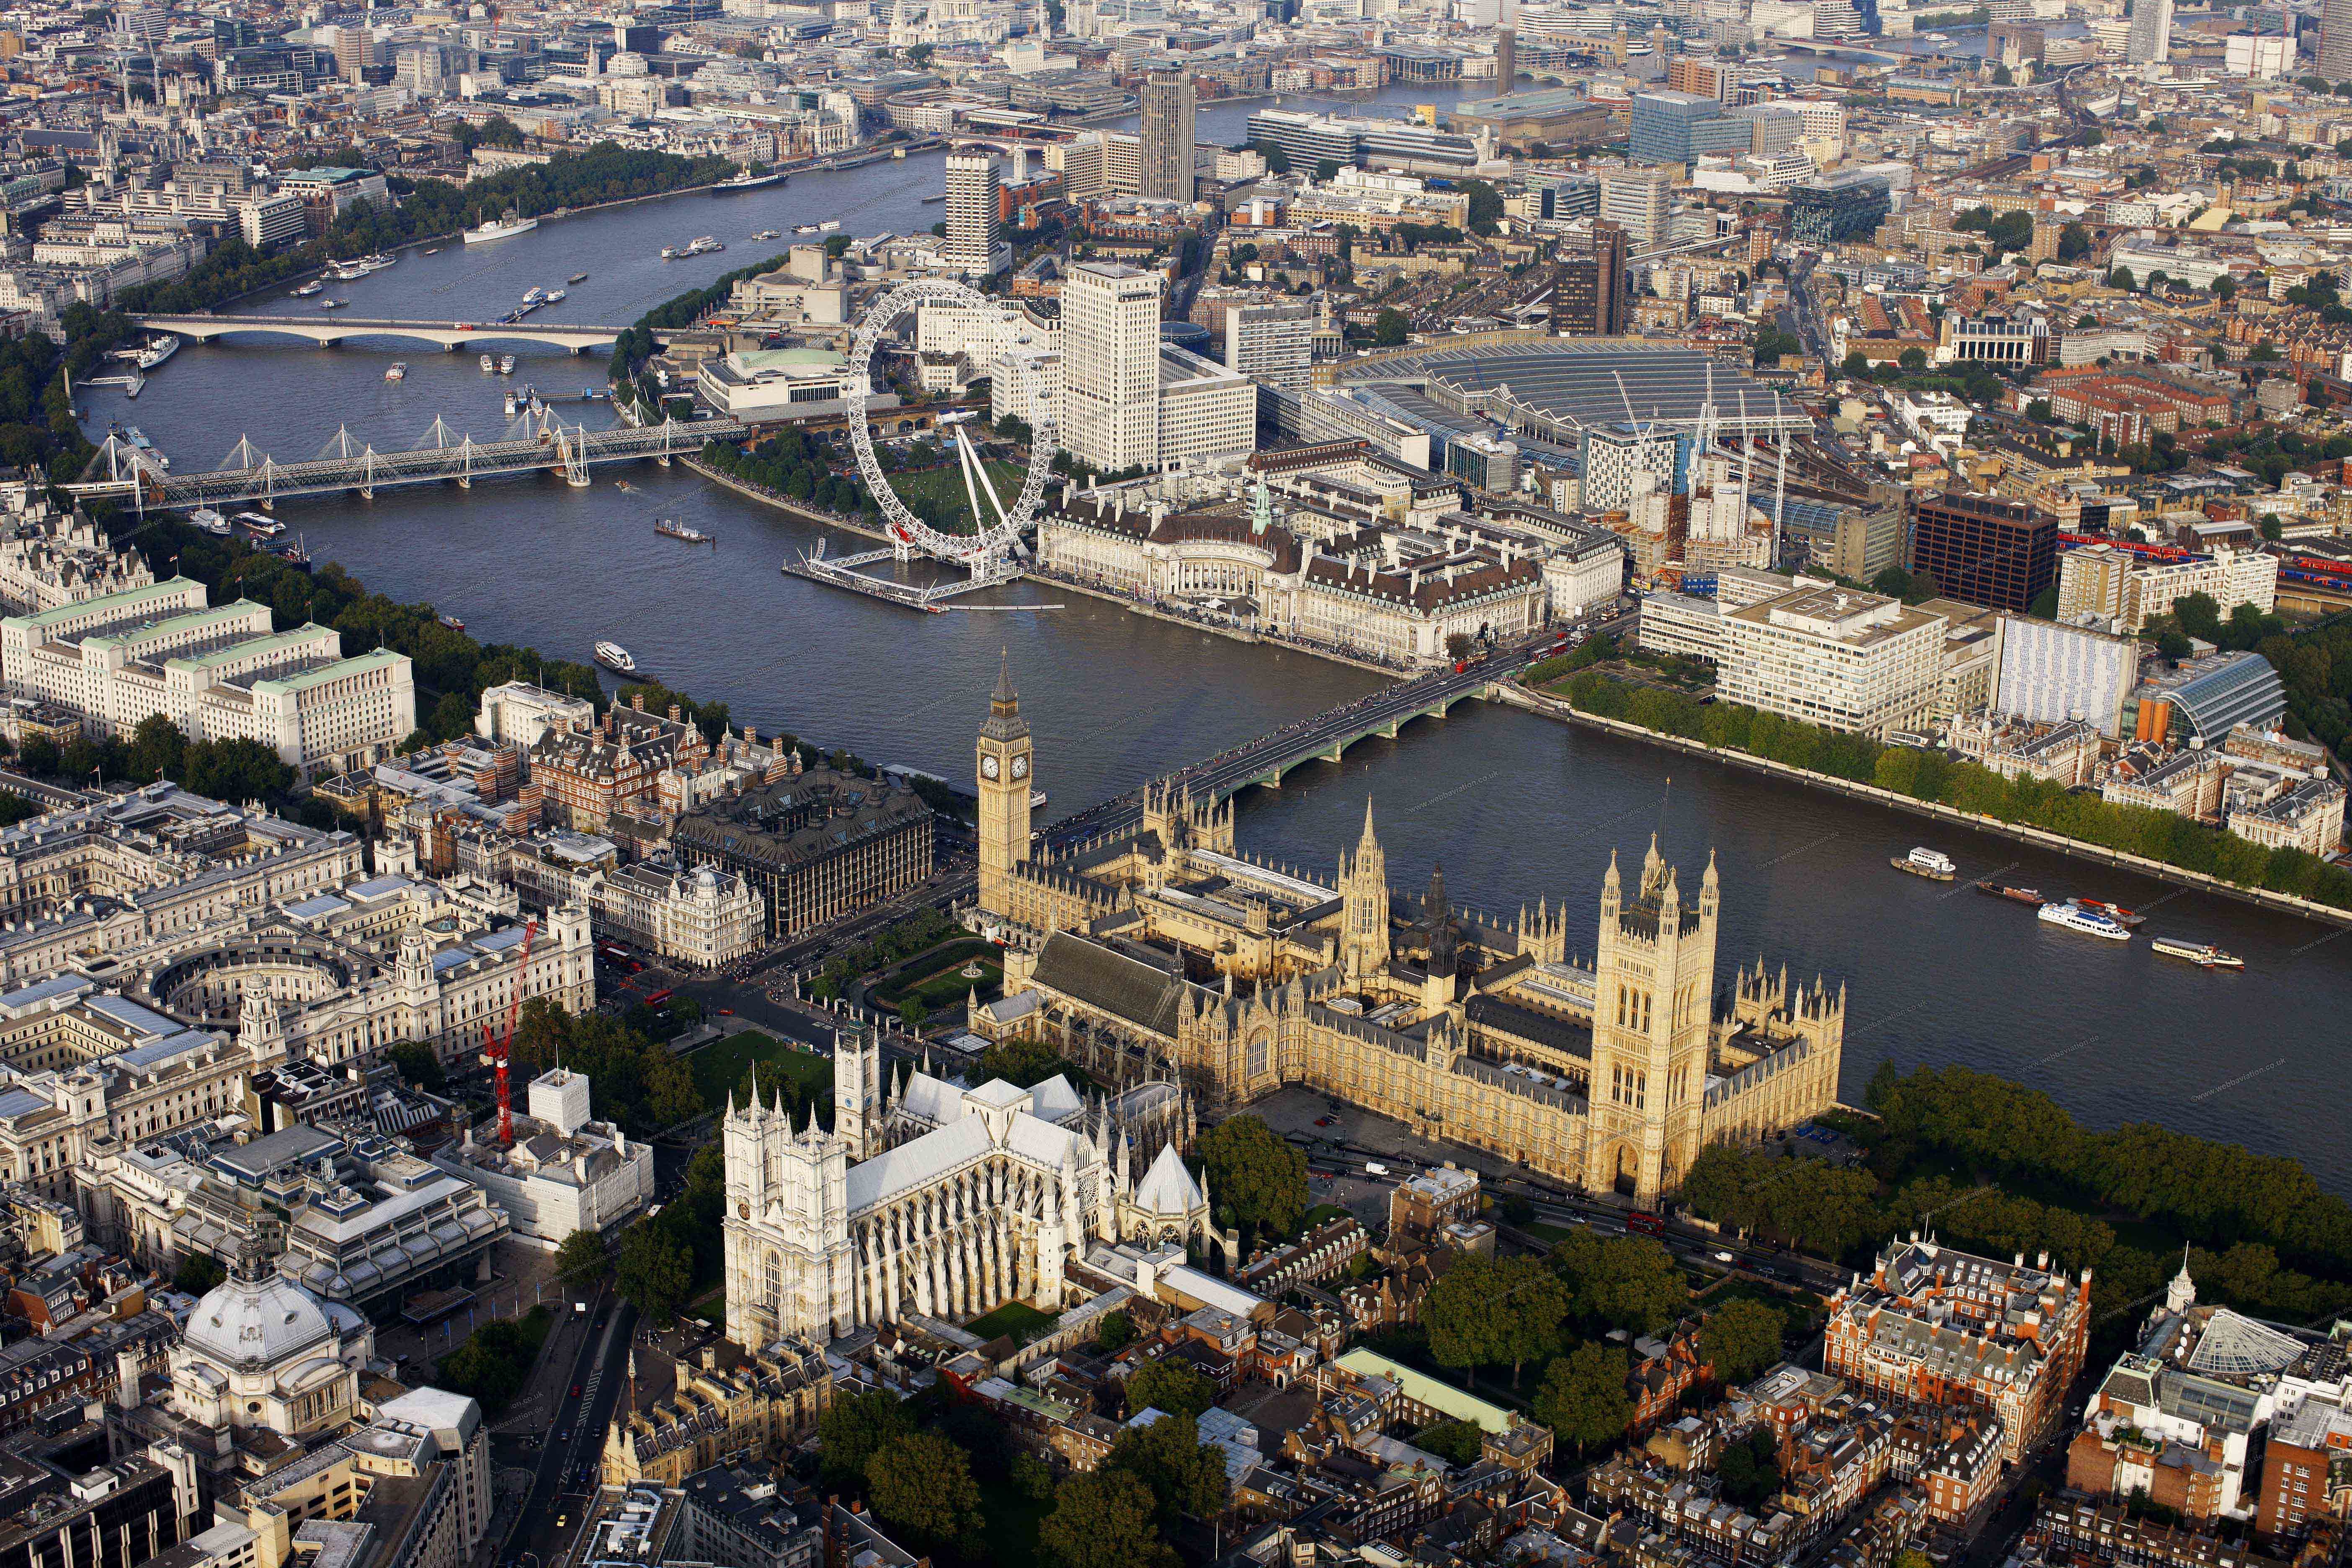 Картинка: London, Big Ben, Вестминстерское аббатство, колесо, река, мосты, вид, здания, корабли